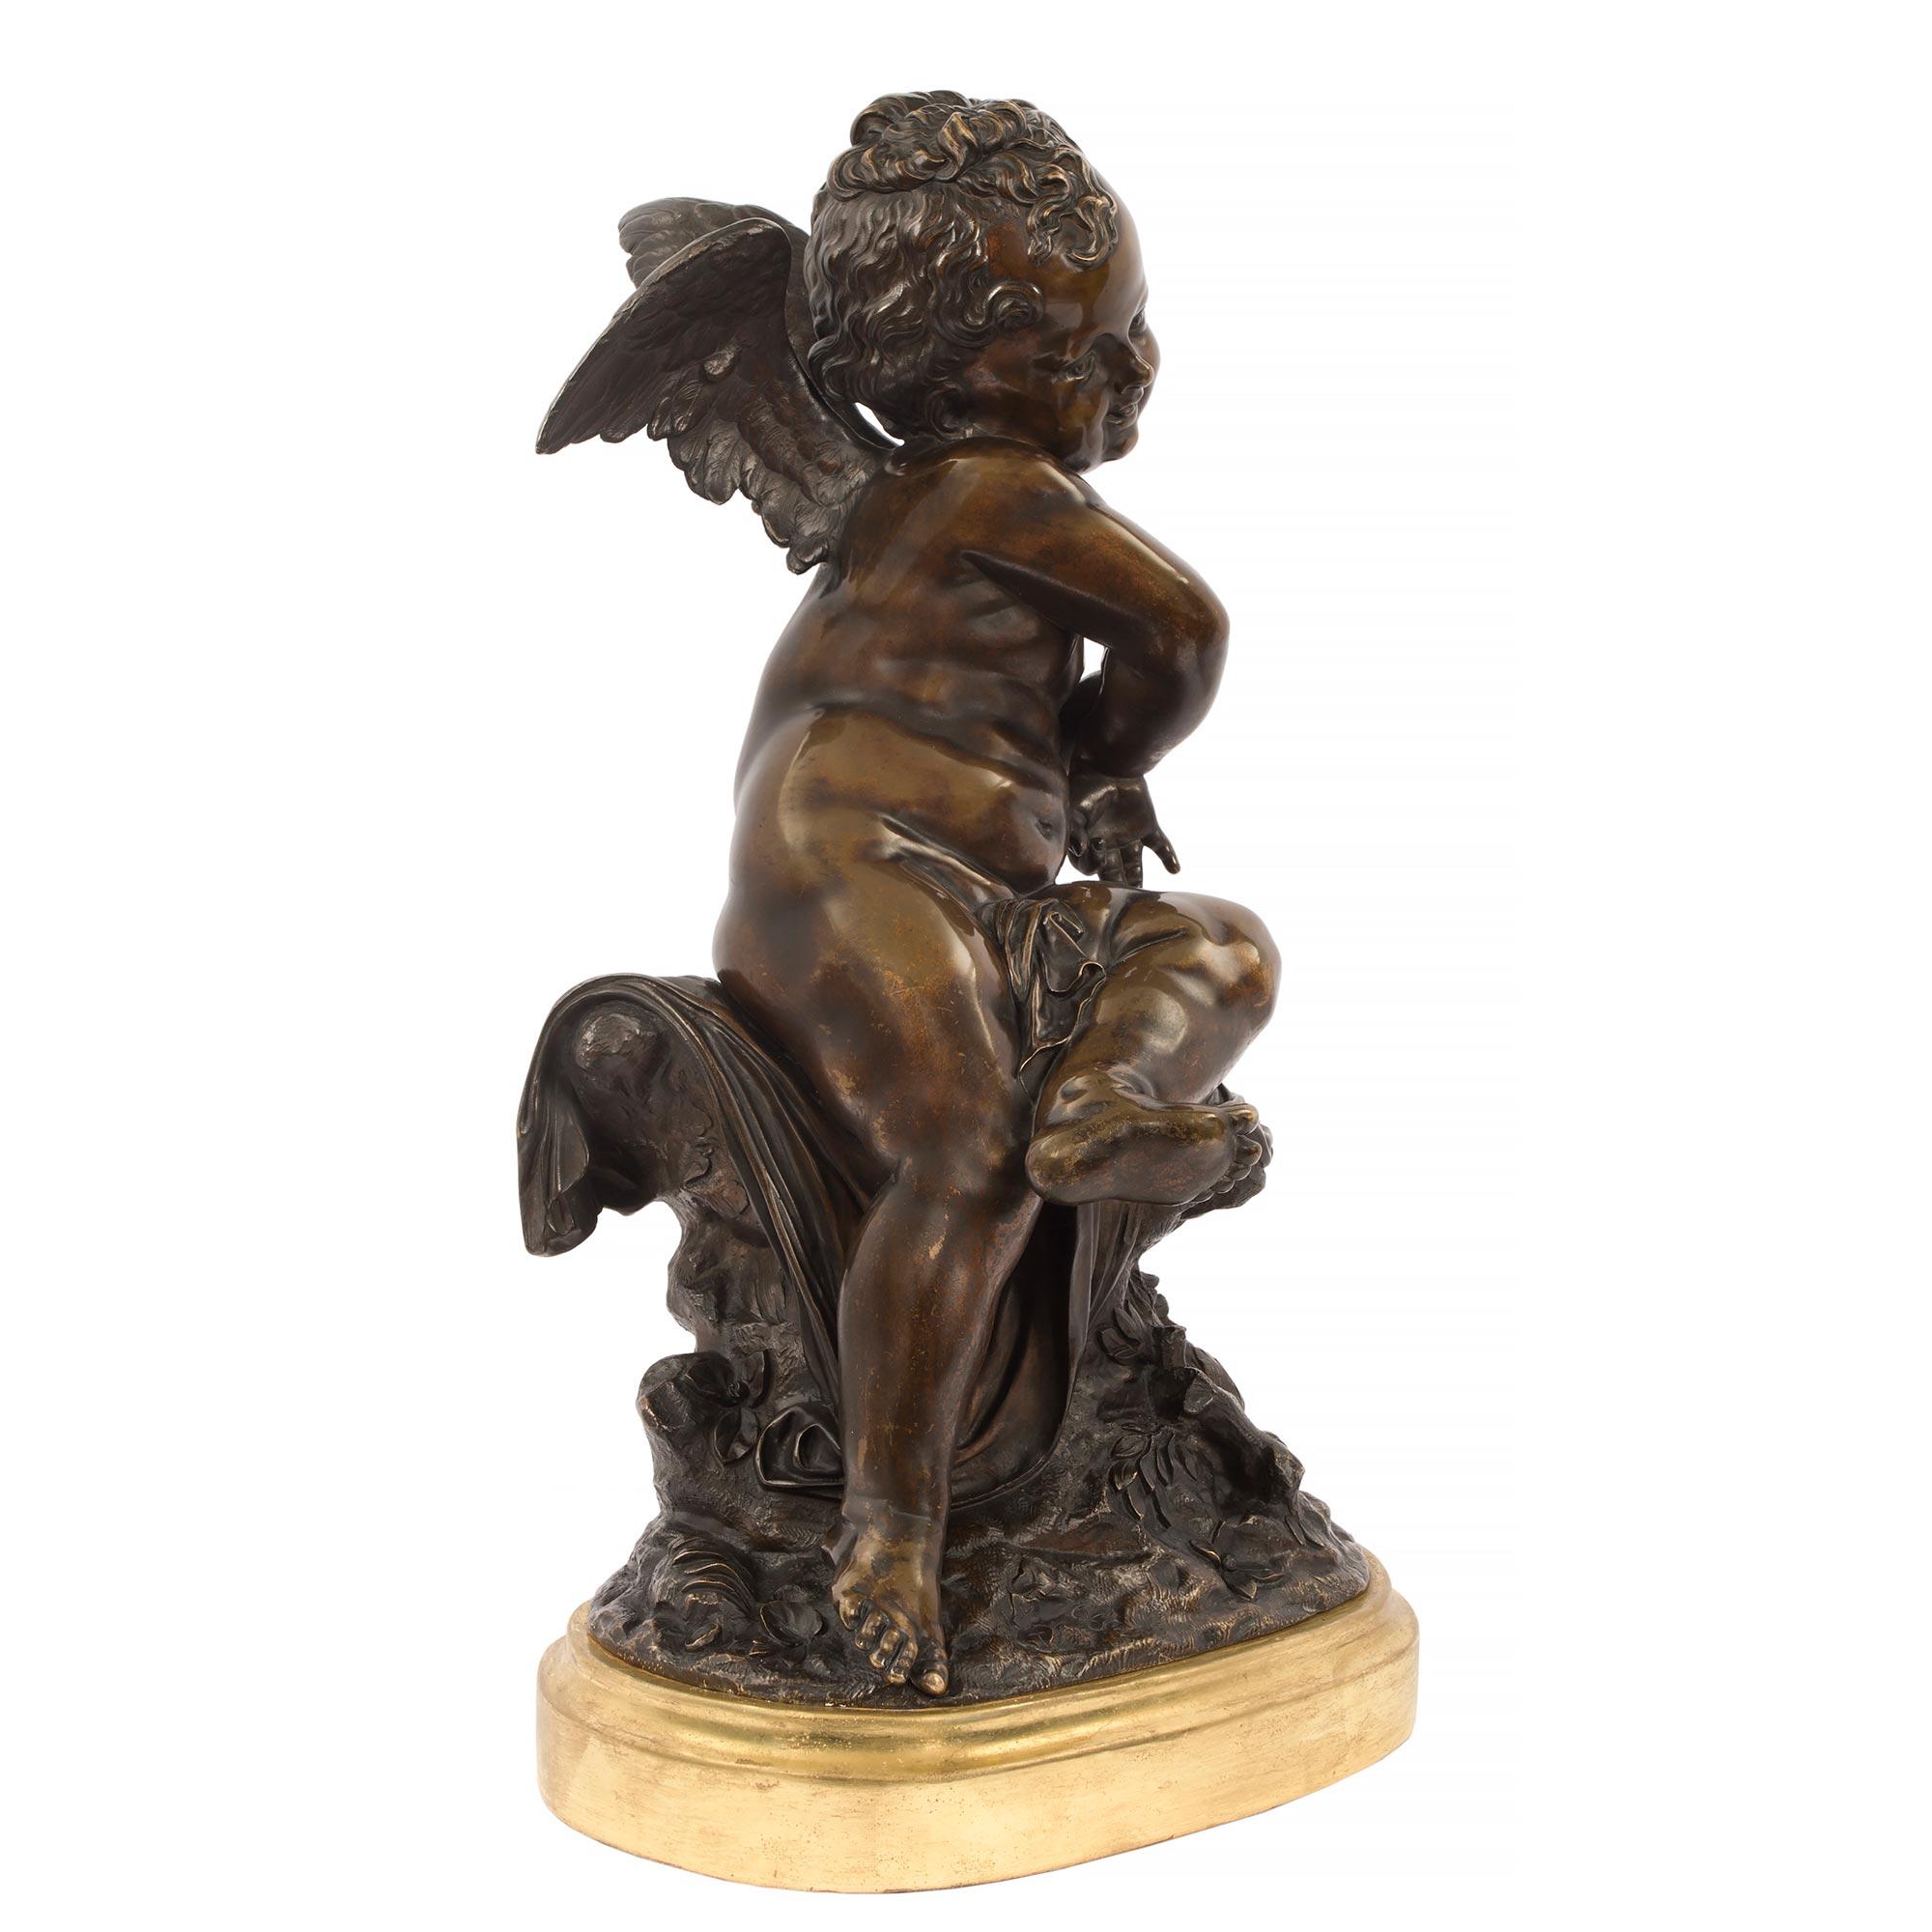 Magnifique statue en bronze patiné de style Louis XVI, signée Lemire. La statue est surmontée d'une base ovale en bois doré avec une fine bordure tachetée. Au-dessus, l'angelot ailé en bronze patiné richement ciselé est assis sur une souche d'arbre